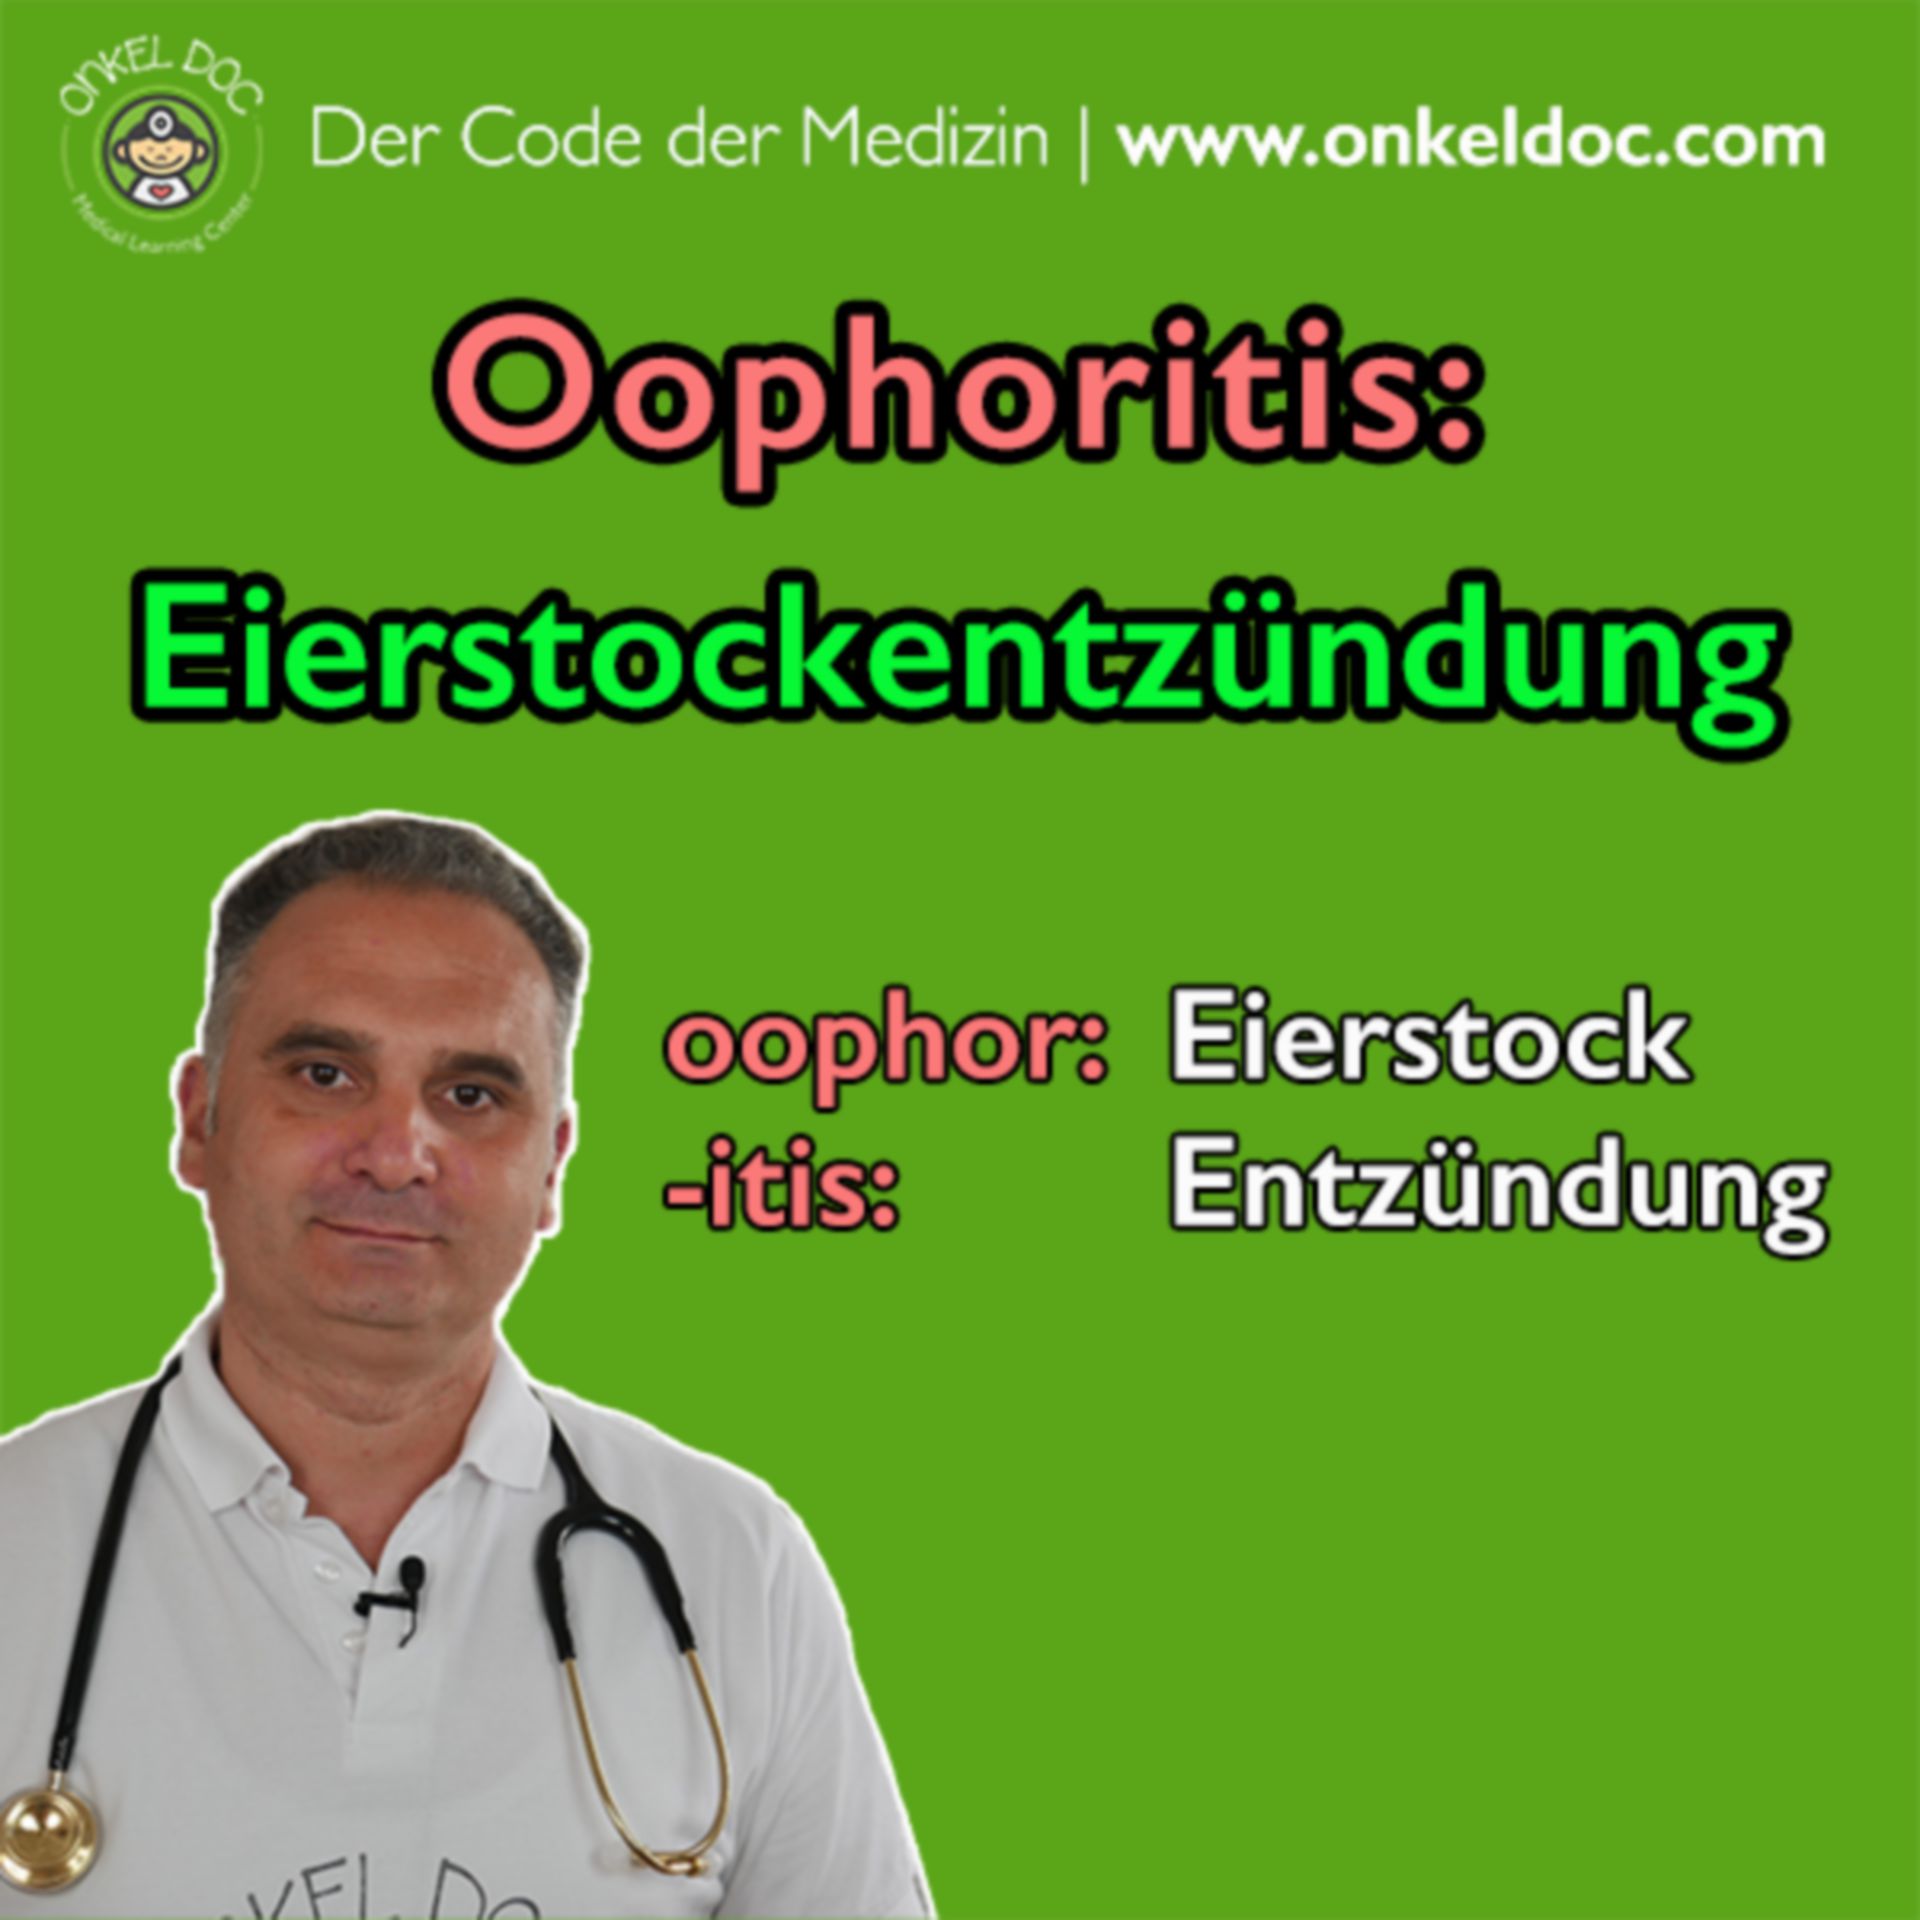 Der Code der Oophoritis